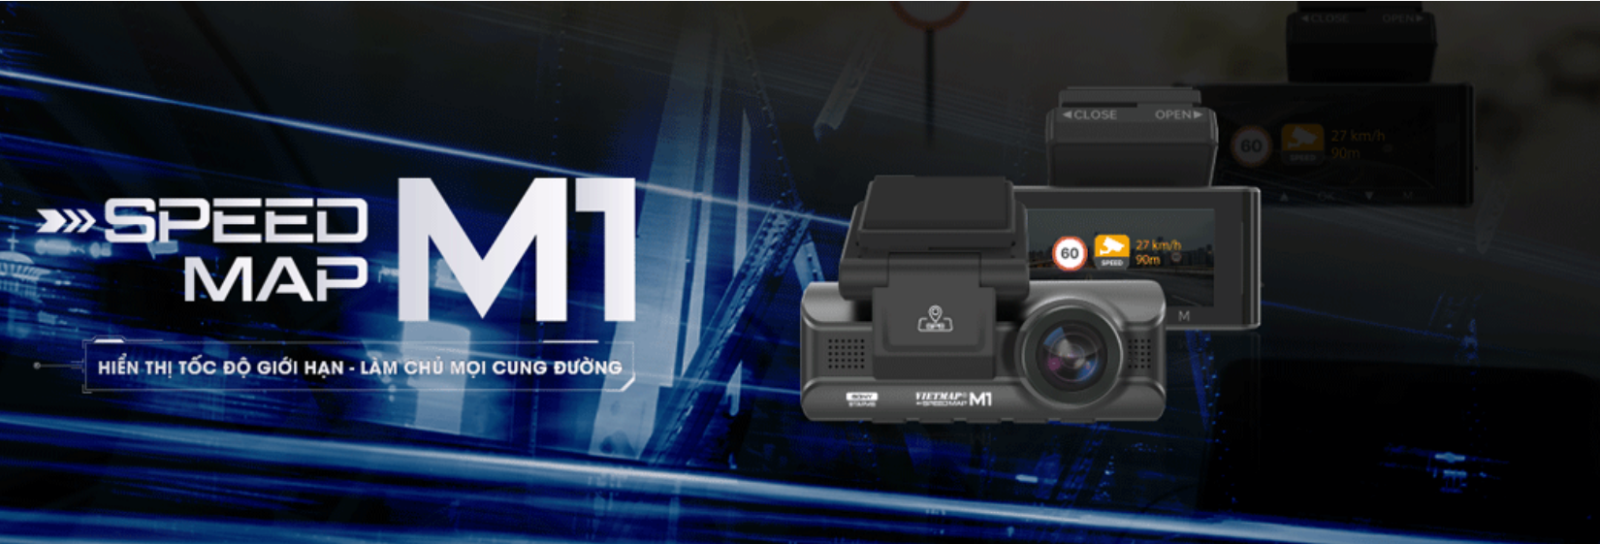 Proauto.vn - Trung tâm phân phối camera hành trình Vietmap SpeedMap M1 chính hãng 